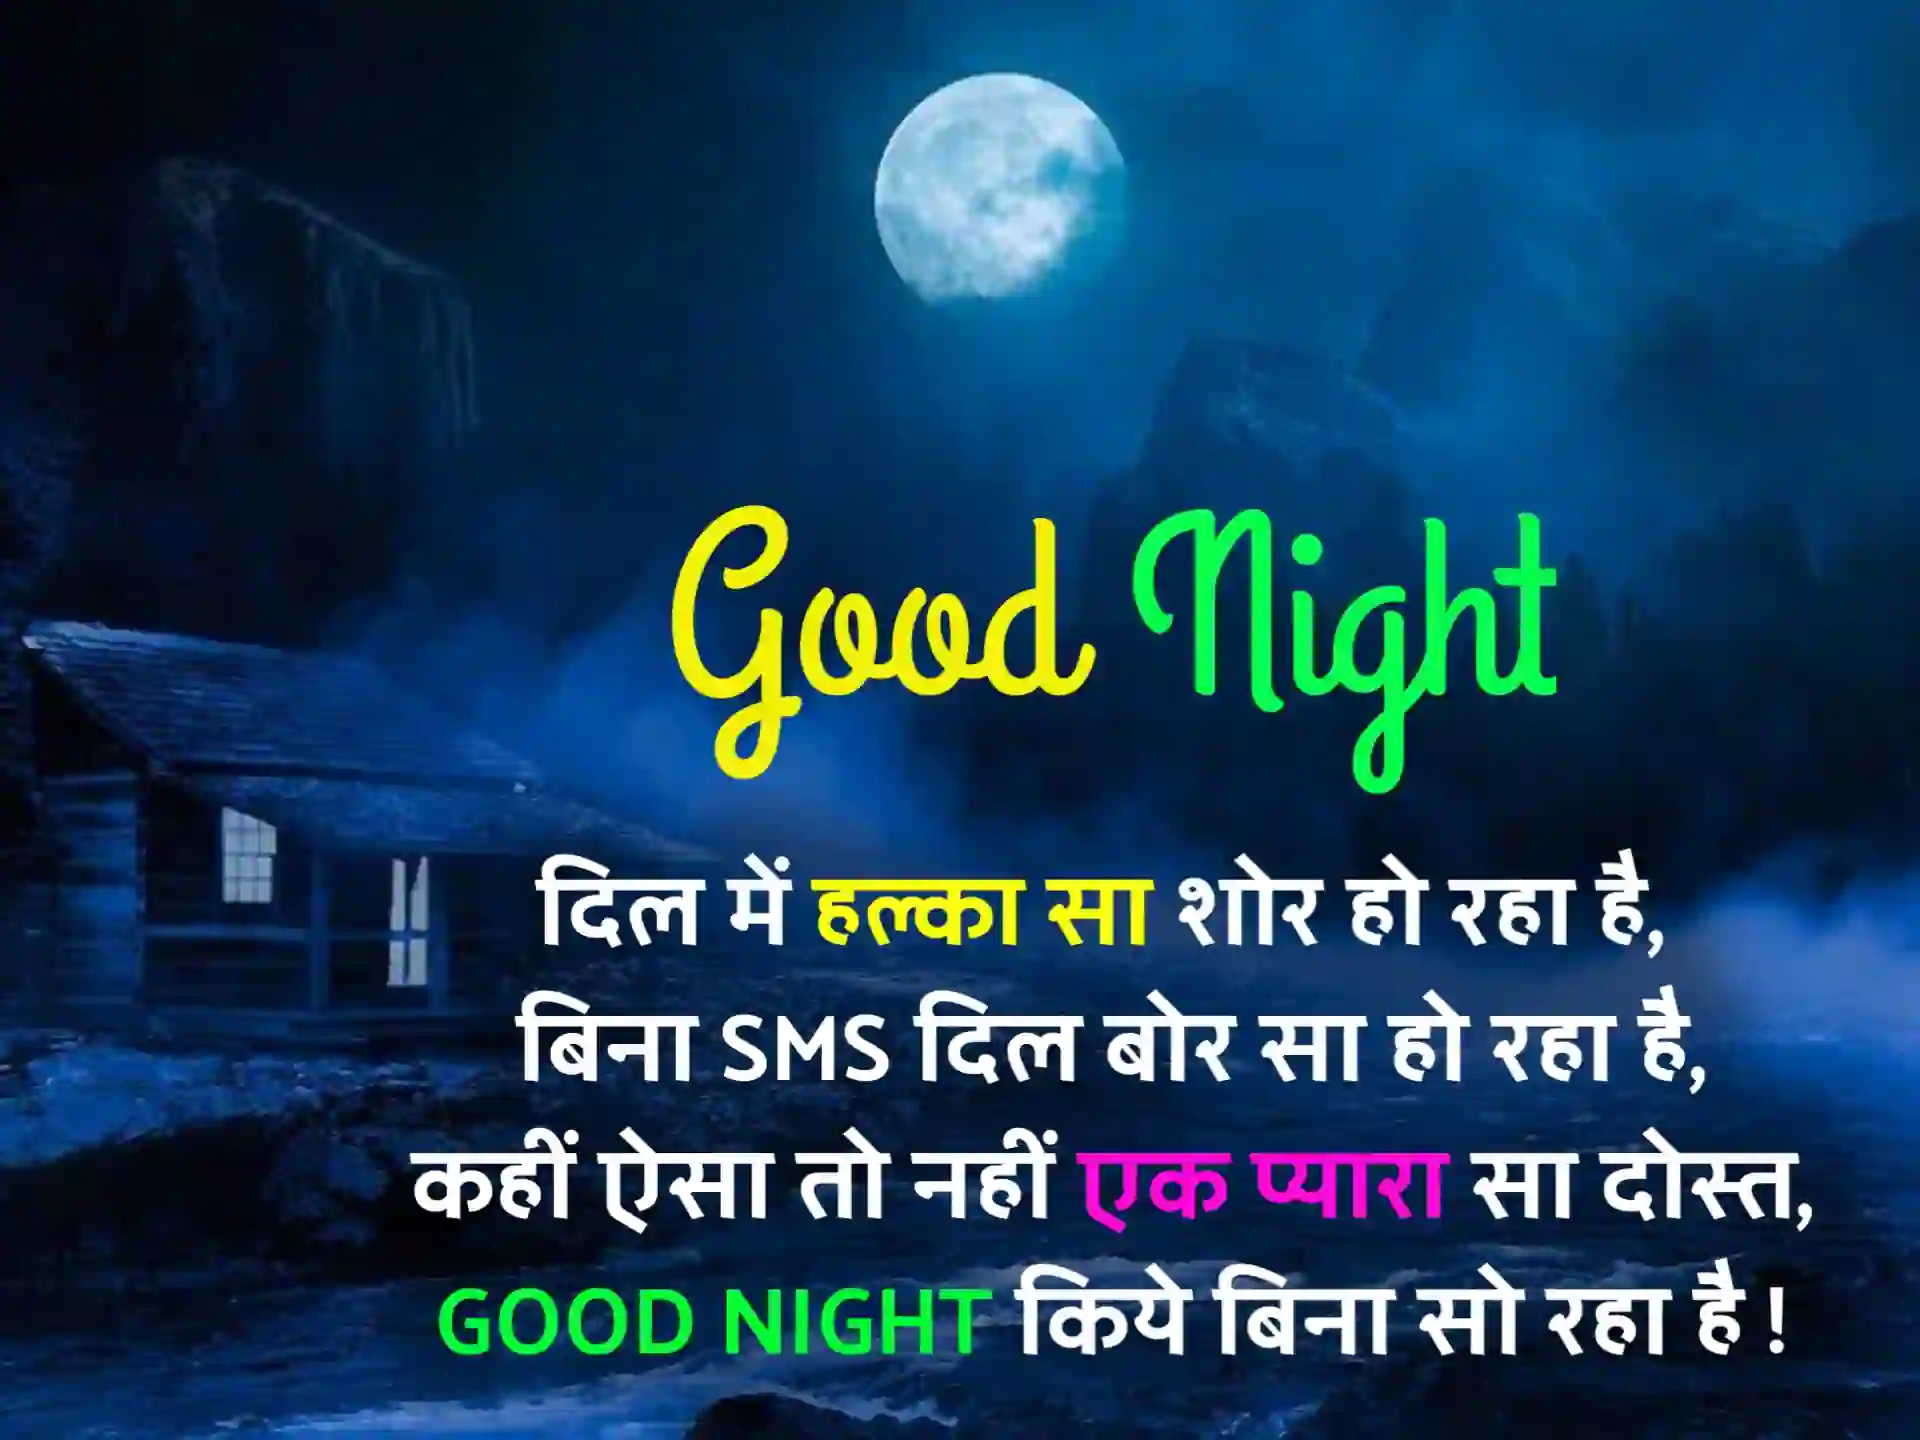 Best Good Night Shayari In Hindi | गुड नाईट शायरी हिंदी में